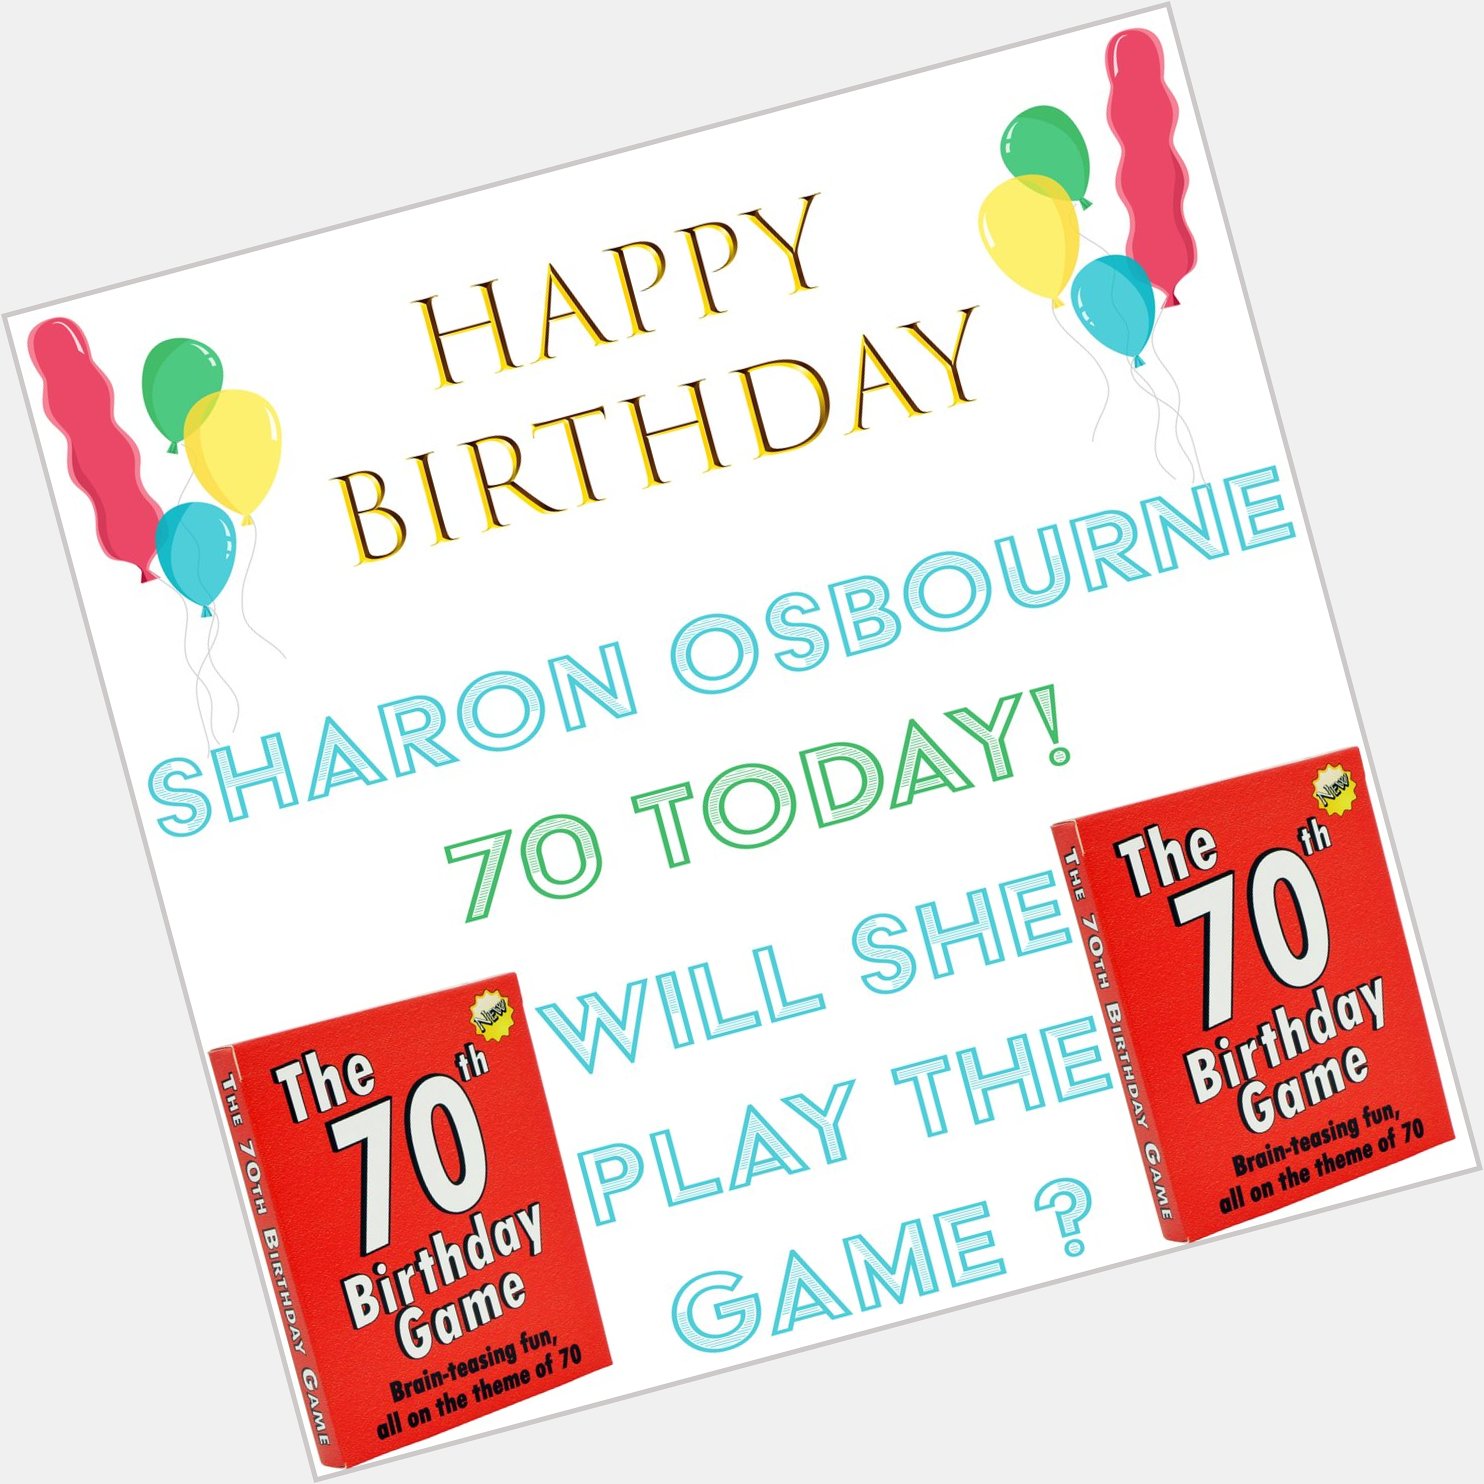 Happy birthday Sharon Osbourne  